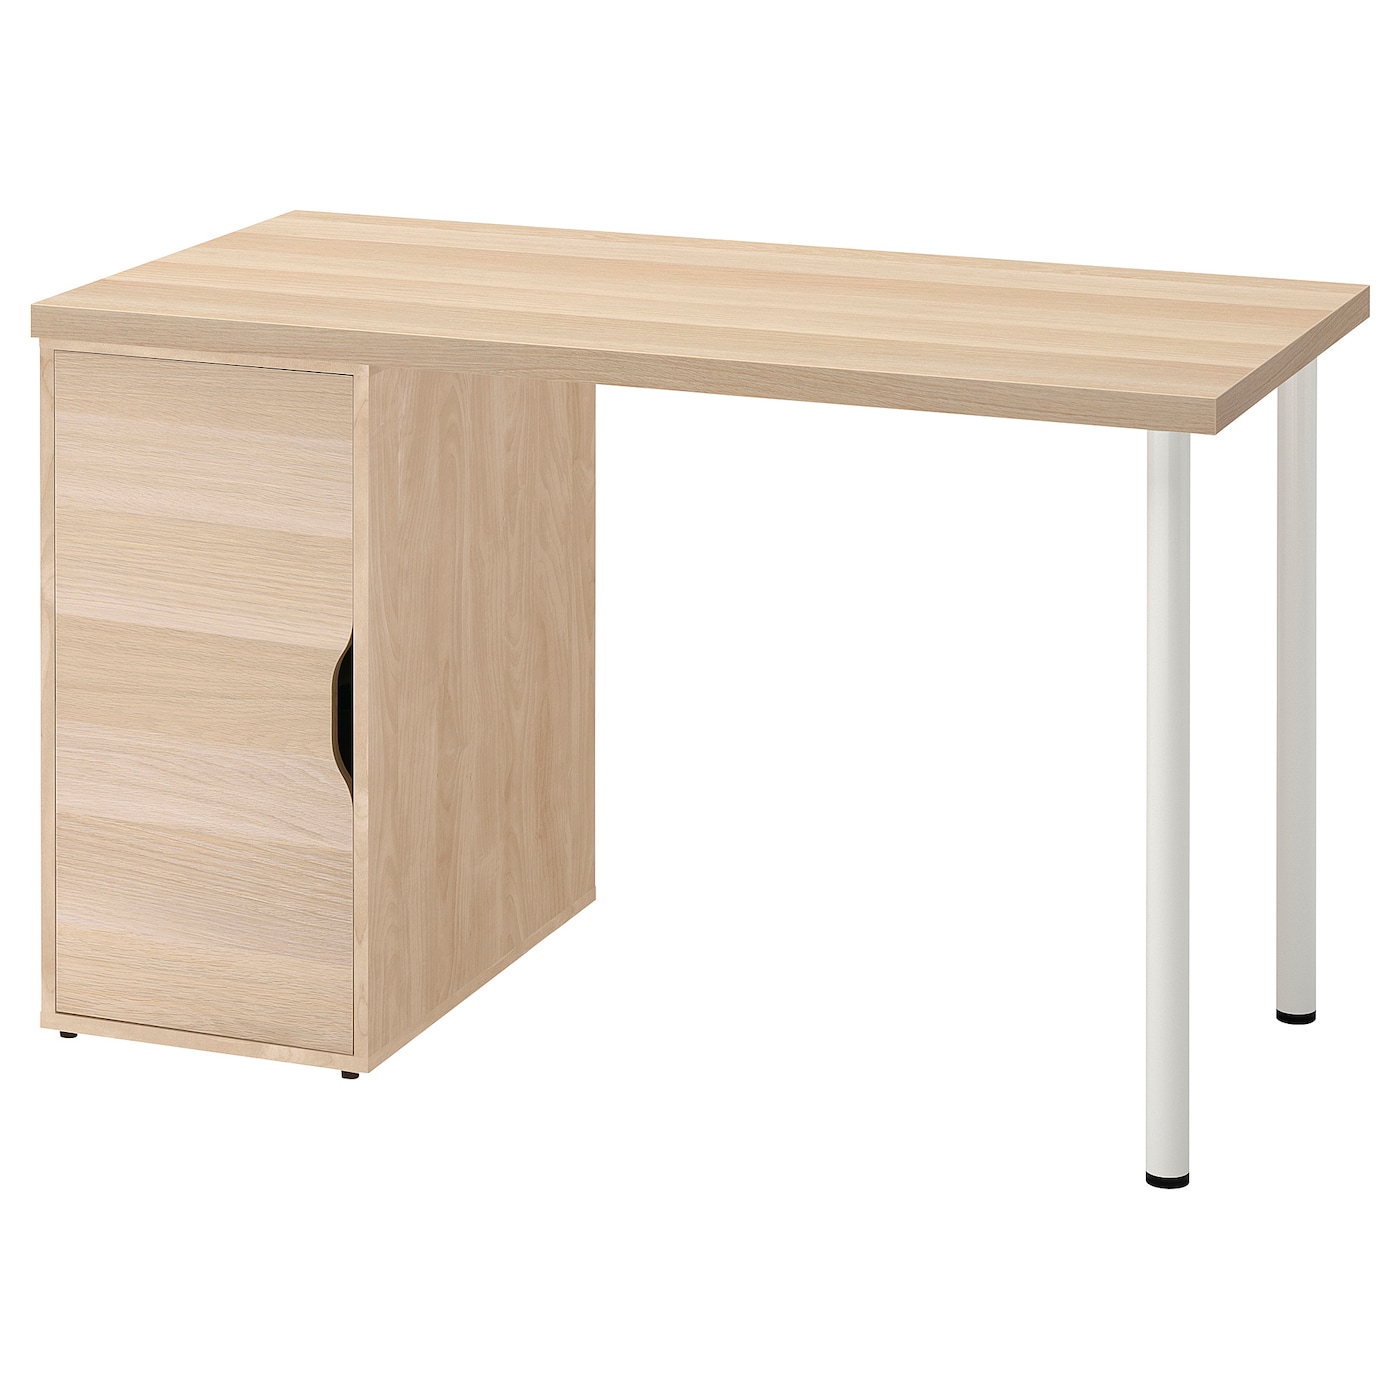 Письменный стол с ящиком - IKEA LAGKAPTEN/ALEX, 120х60 см, под беленый дуб/белый, ЛАГКАПТЕН/АЛЕКС ИКЕА